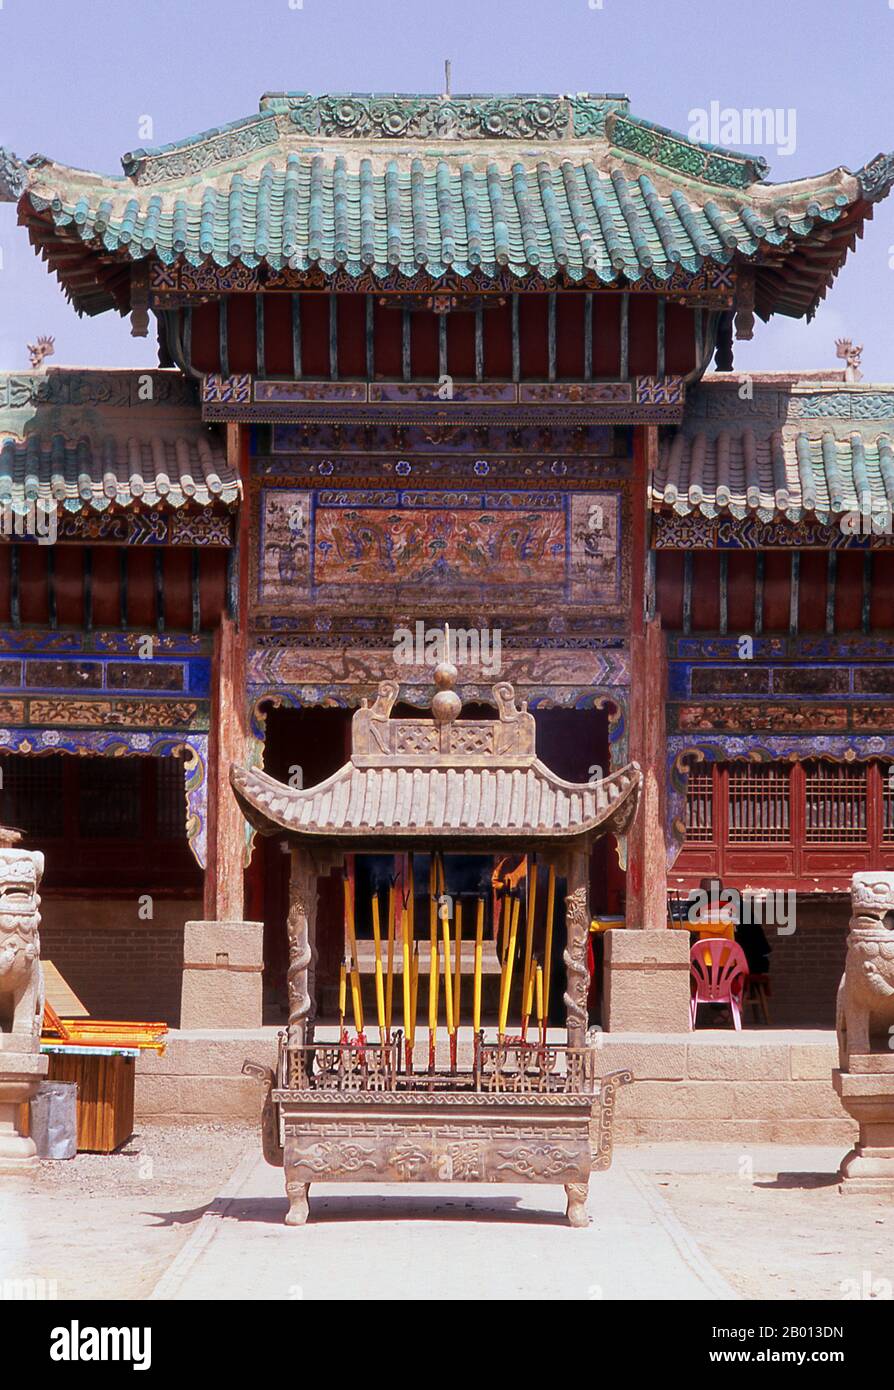 Cina: Parete esterna torre accanto al cancello anteriore, Jiayuguan Fort, Jiayuguan, Gansu. Jiayuguan, il ‘primo e più grande passo sotto il cielo’, fu completato nel 1372 per ordine di Zhu Yuanzhang, il primo imperatore Ming (1368-1398), per segnare la fine della Grande Muraglia Ming. Erano anche i limiti stessi della civiltà cinese, e gli inizi delle terre ‘barbariche’ esterne. Per secoli il forte non era solo di importanza strategica per Han Chinese, ma anche di importanza culturale. Questo è stato l'ultimo luogo civilizzato prima delle tenebre esterne. Foto Stock